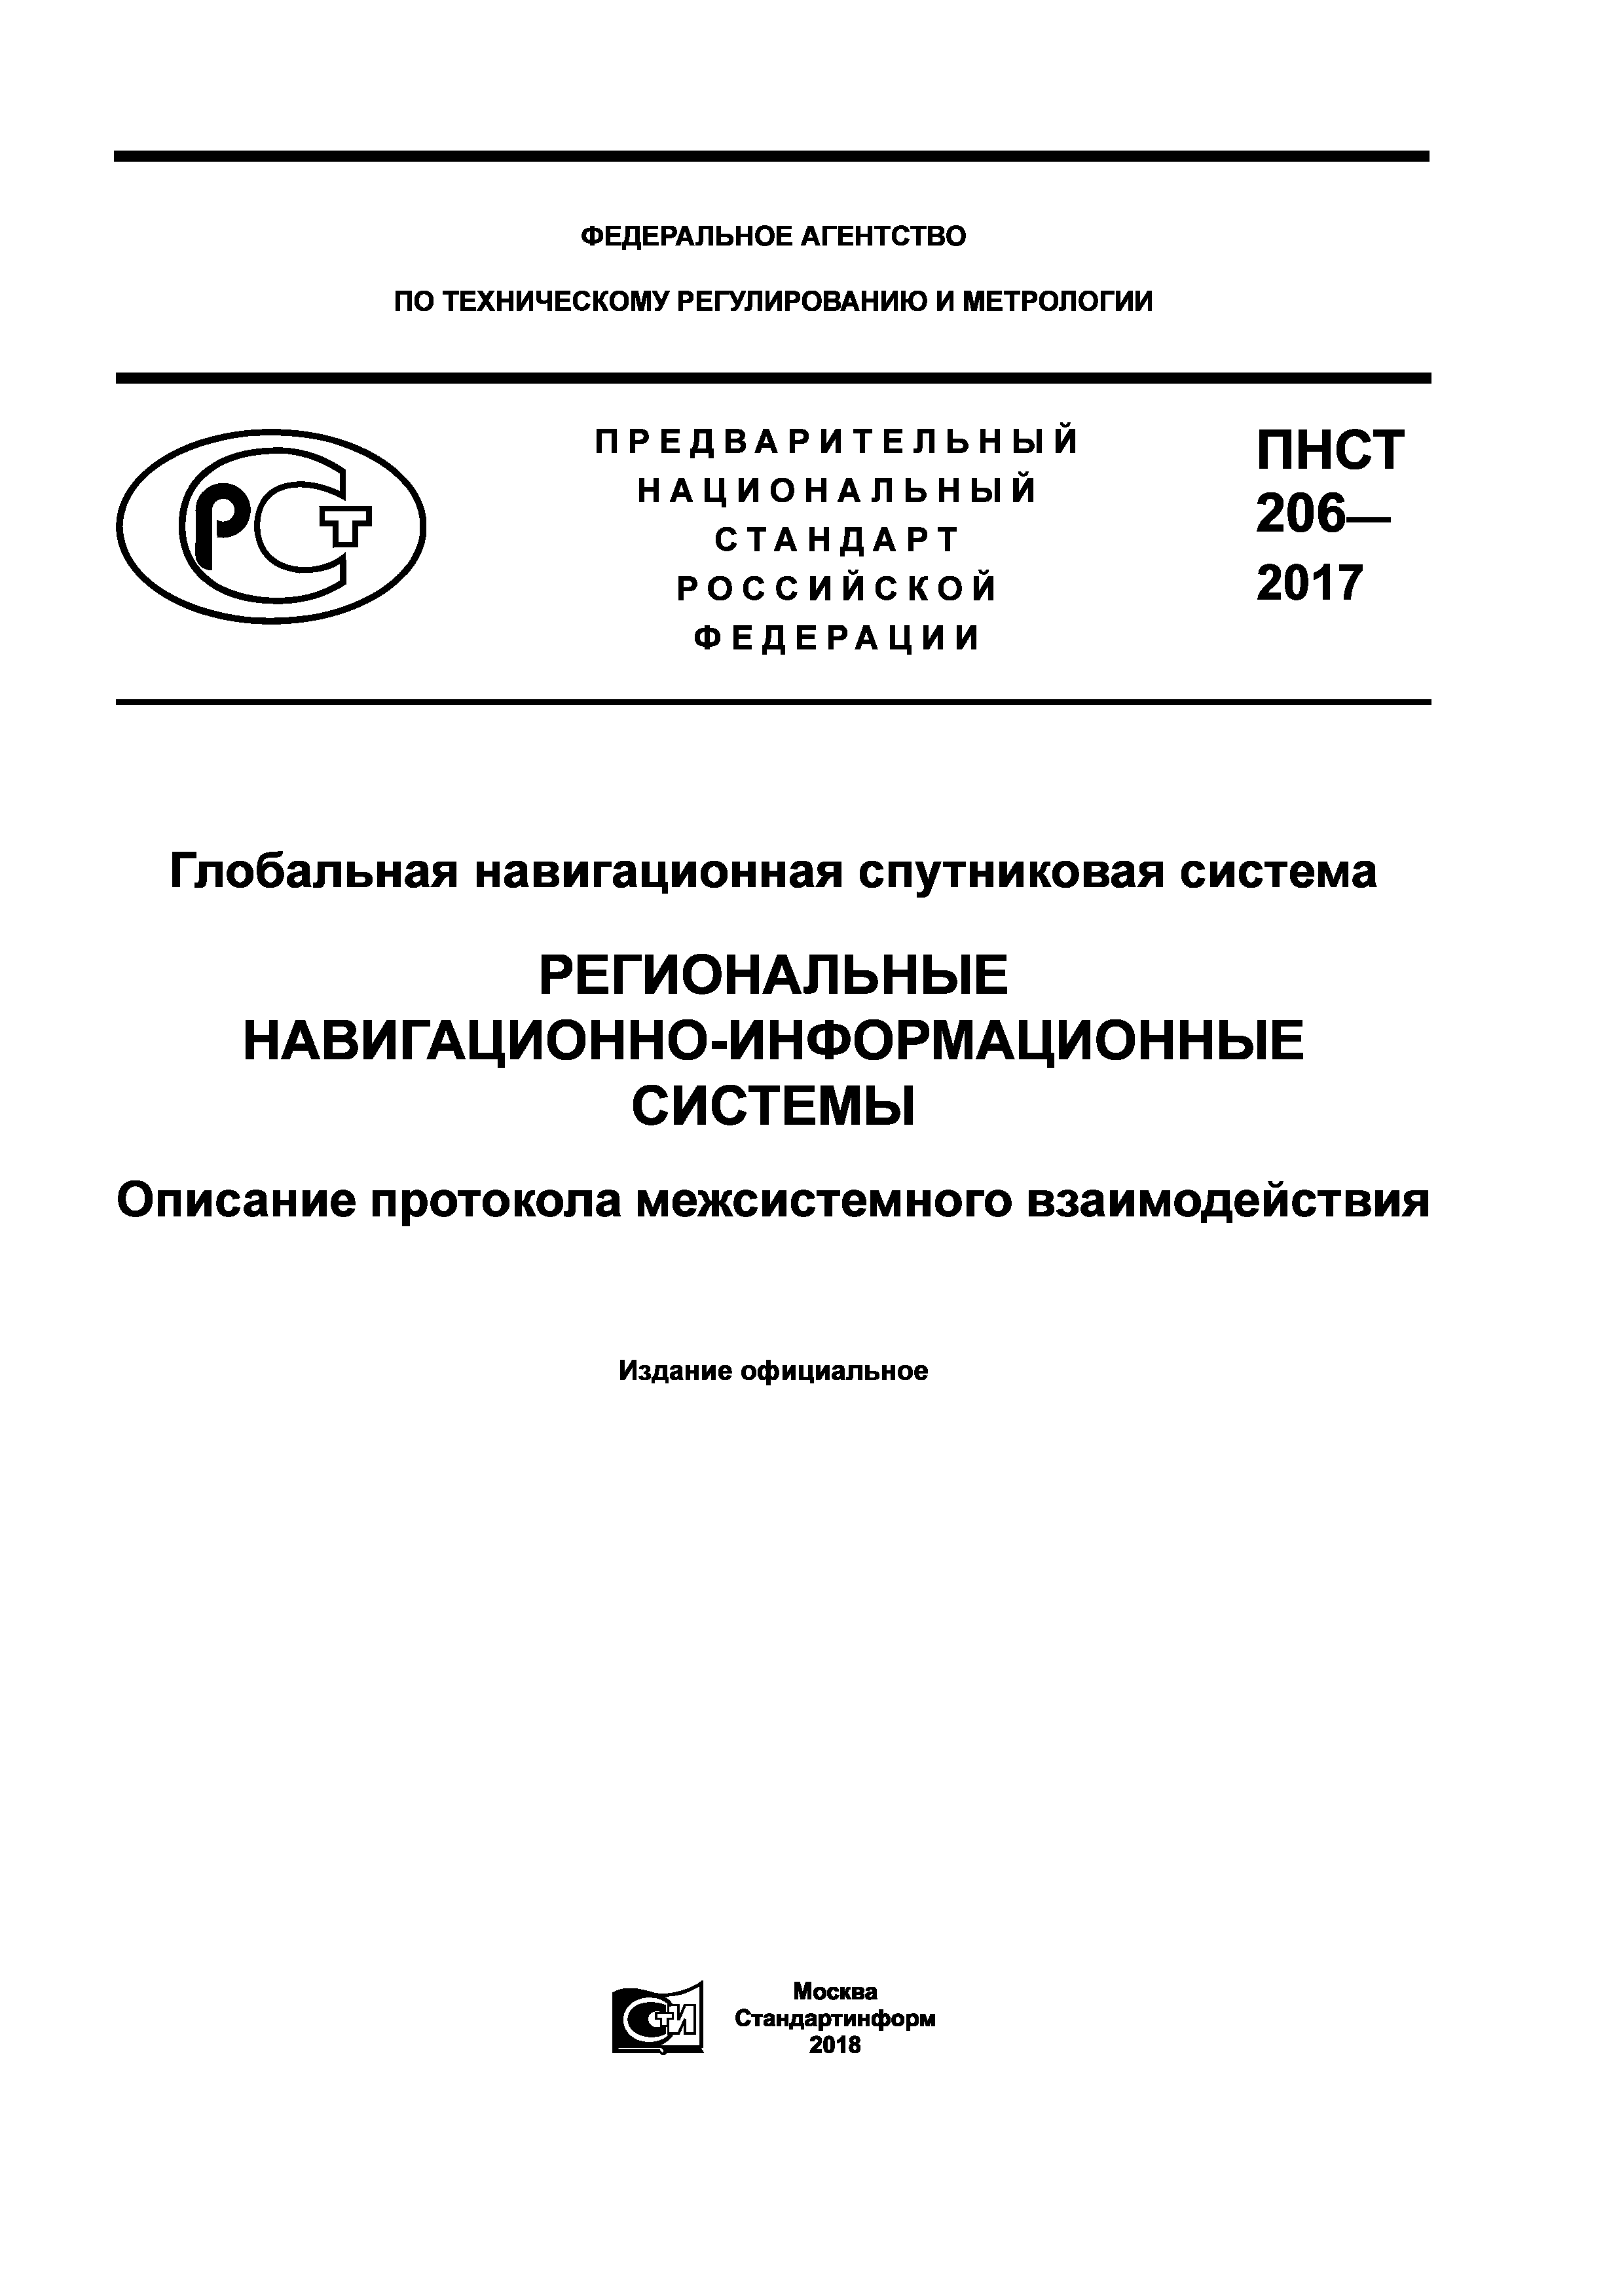 ПНСТ 206-2017